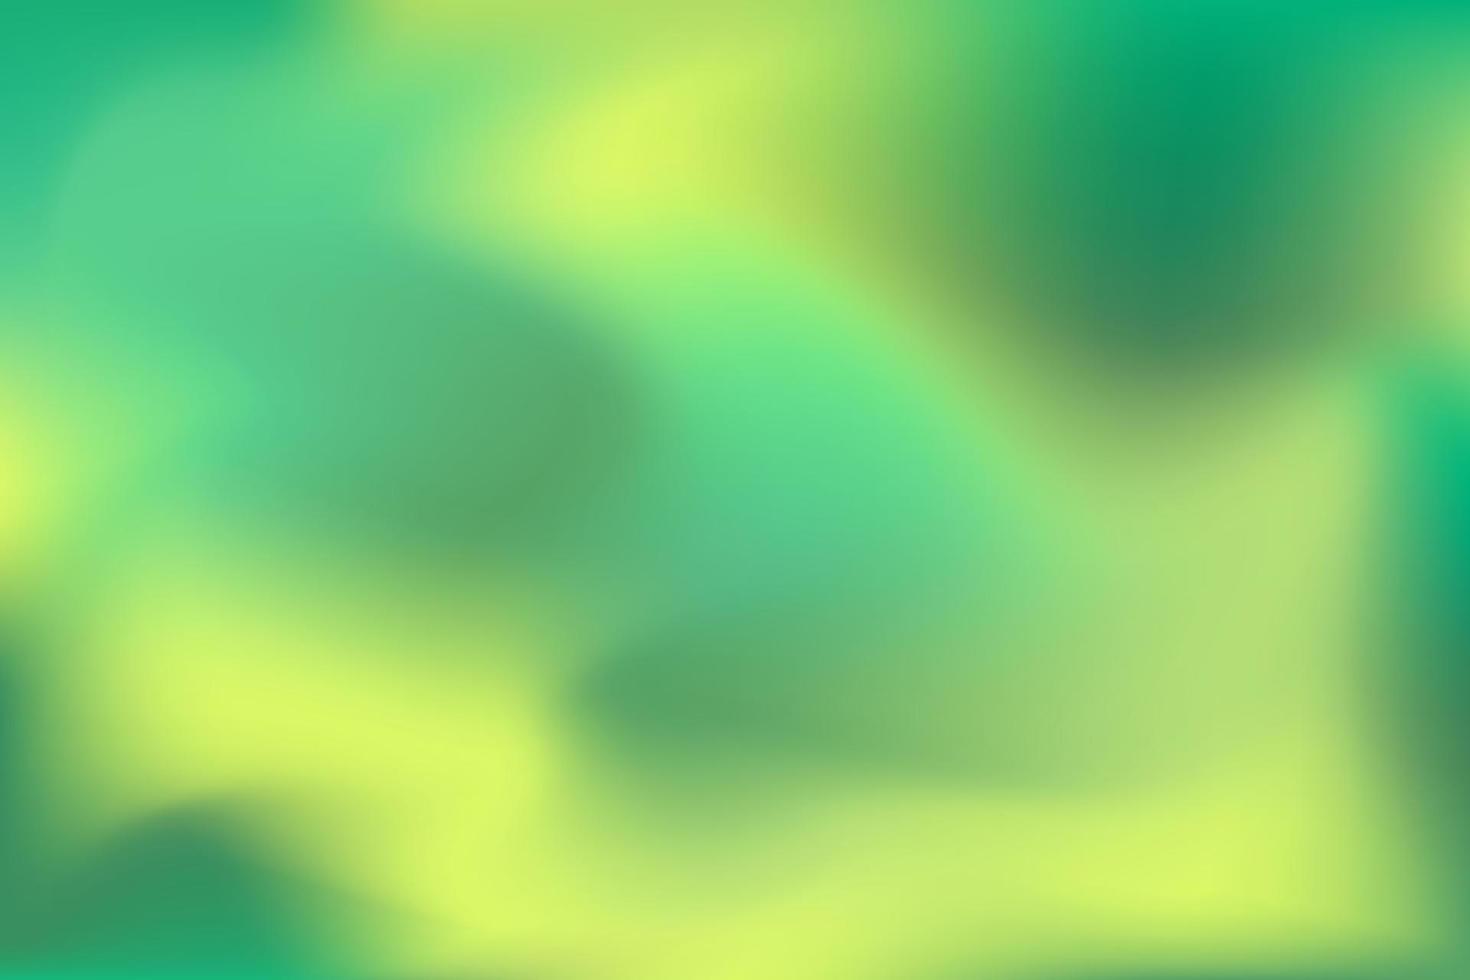 schöner einfacher vektorgrün-gelber farbverlauf. dezenter Farbhintergrund. kann für webhintergrund, banner, postkarte, collage verwendet werden vektor